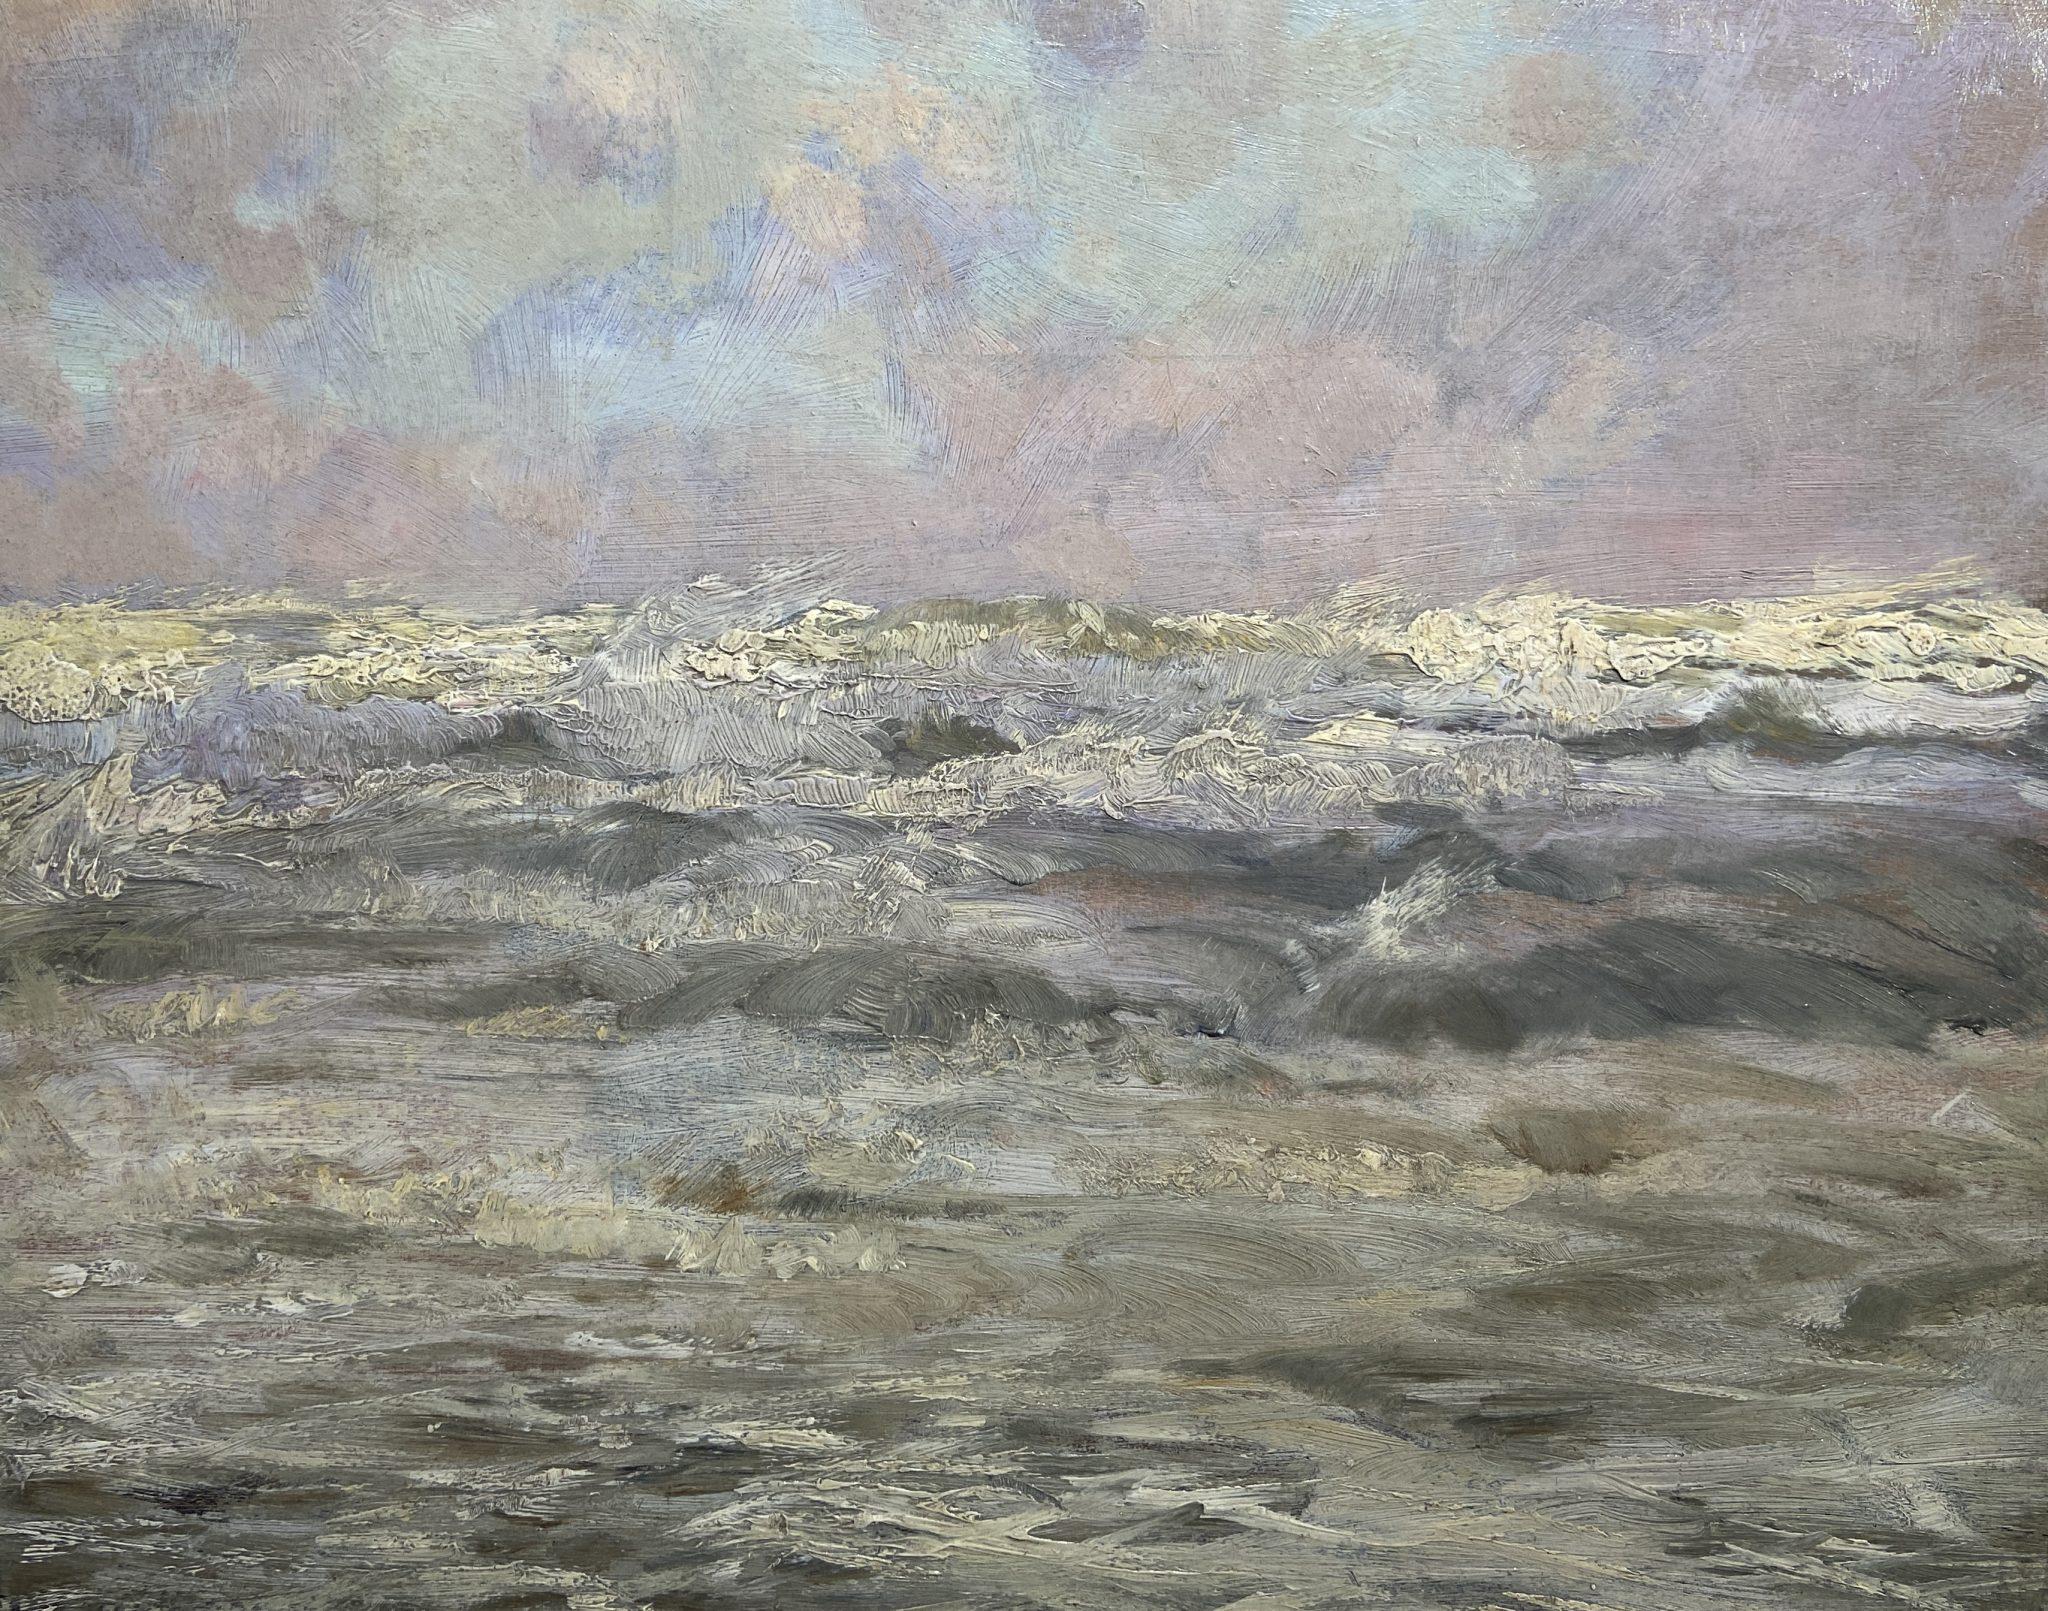 Pleine mer, fin du 19e siècle